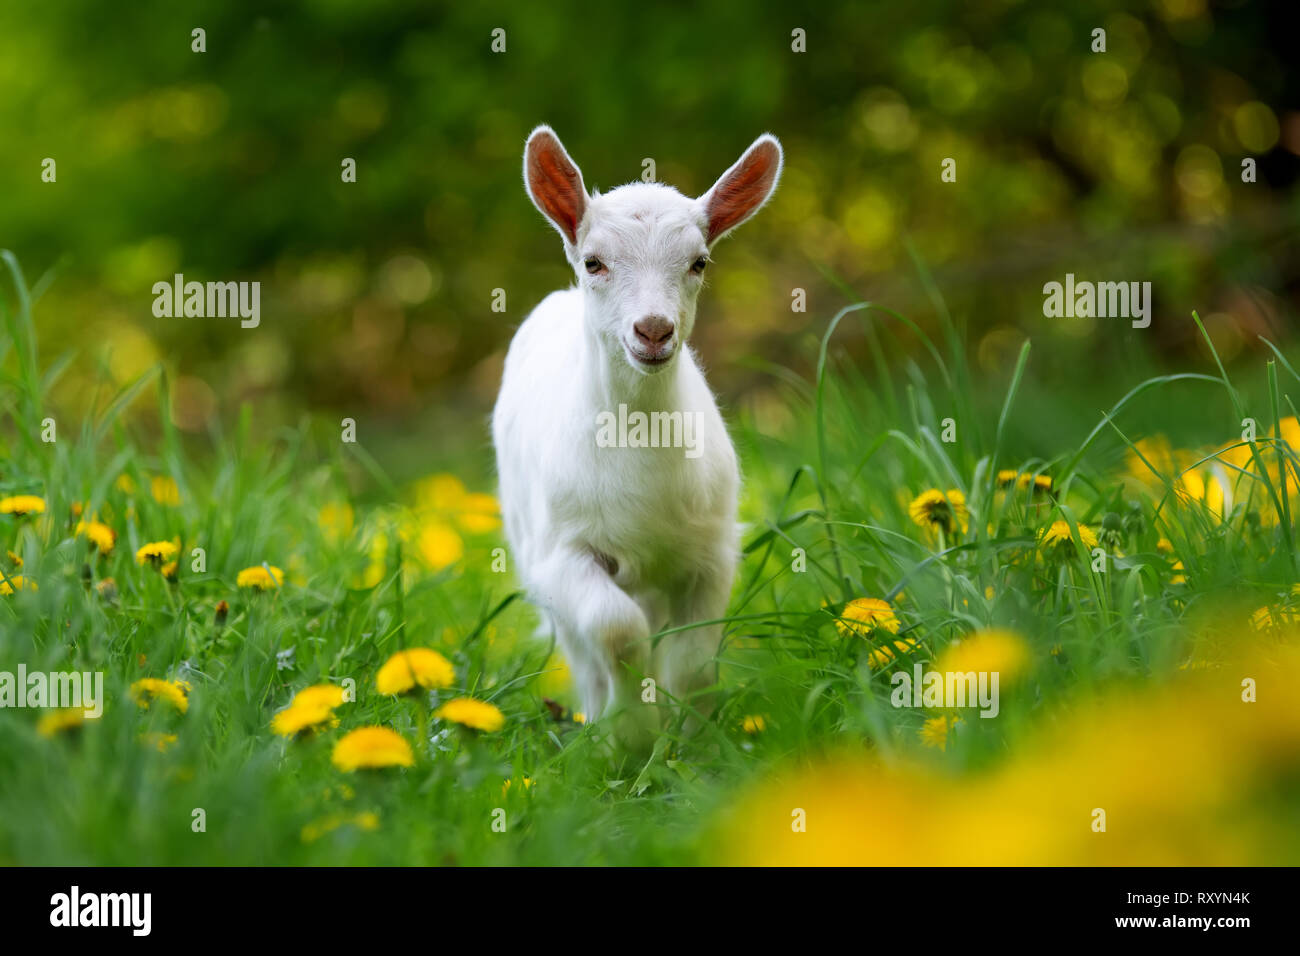 Weiß baby Ziege stehend auf grünem Gras mit gelben Blumen Stockfoto